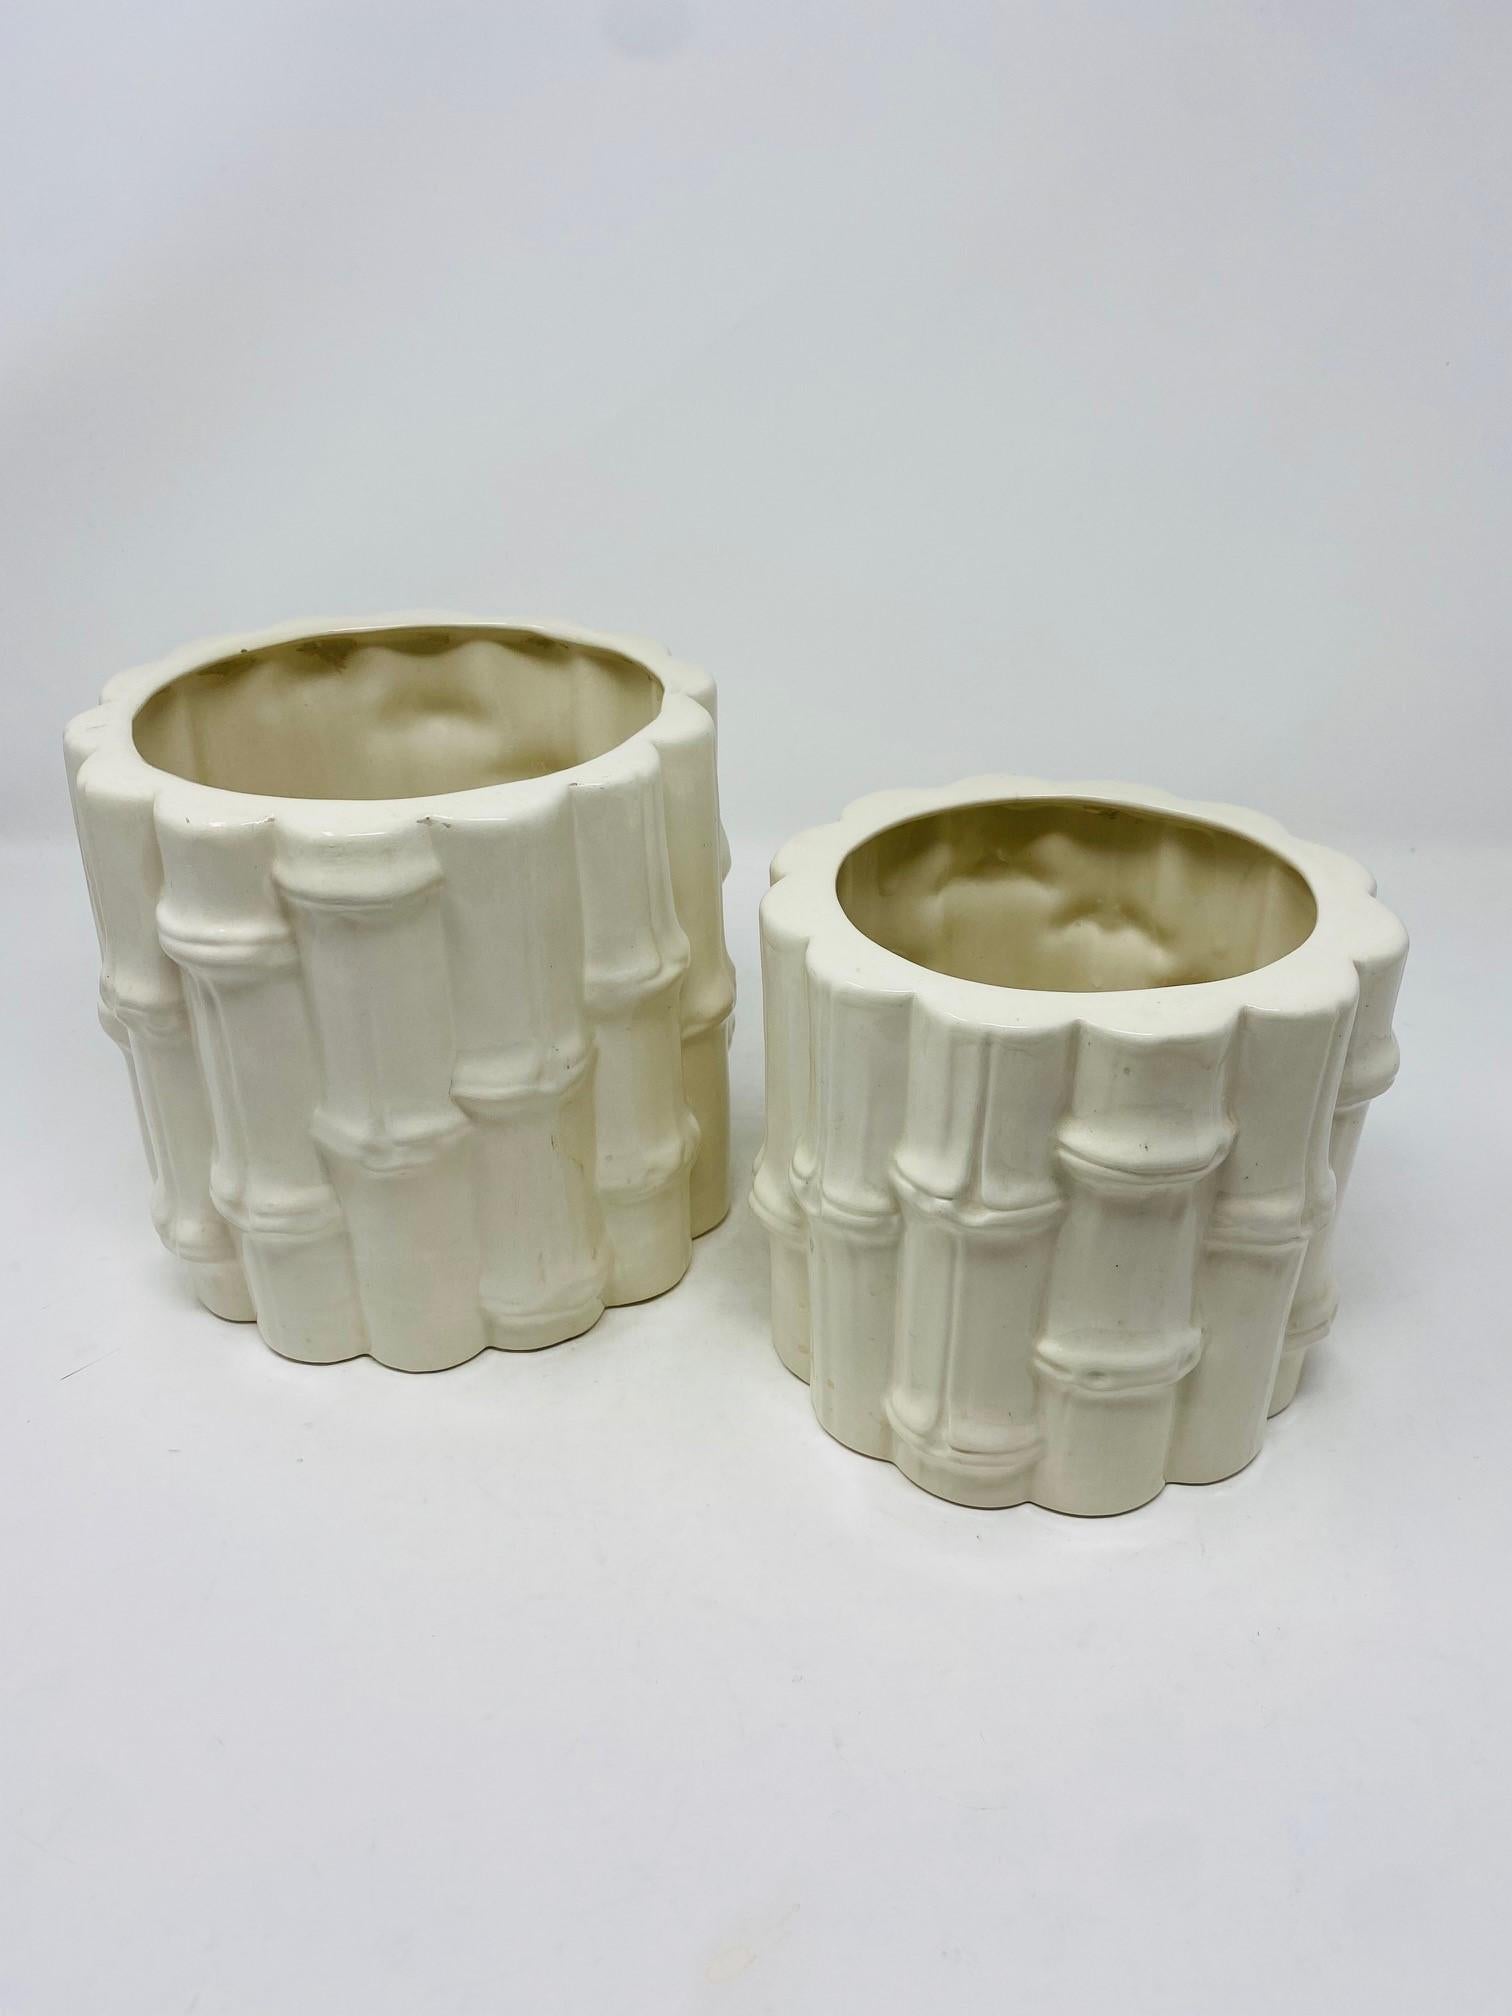 Magnifique ensemble de vases en céramique majolique de style bambou.  Ce magnifique ensemble offre deux tailles différentes qui s'adapteront à votre décor.  Magnifiquement fini dans un style qui évoque le bambou dans un beau glaçage blanc céramique.